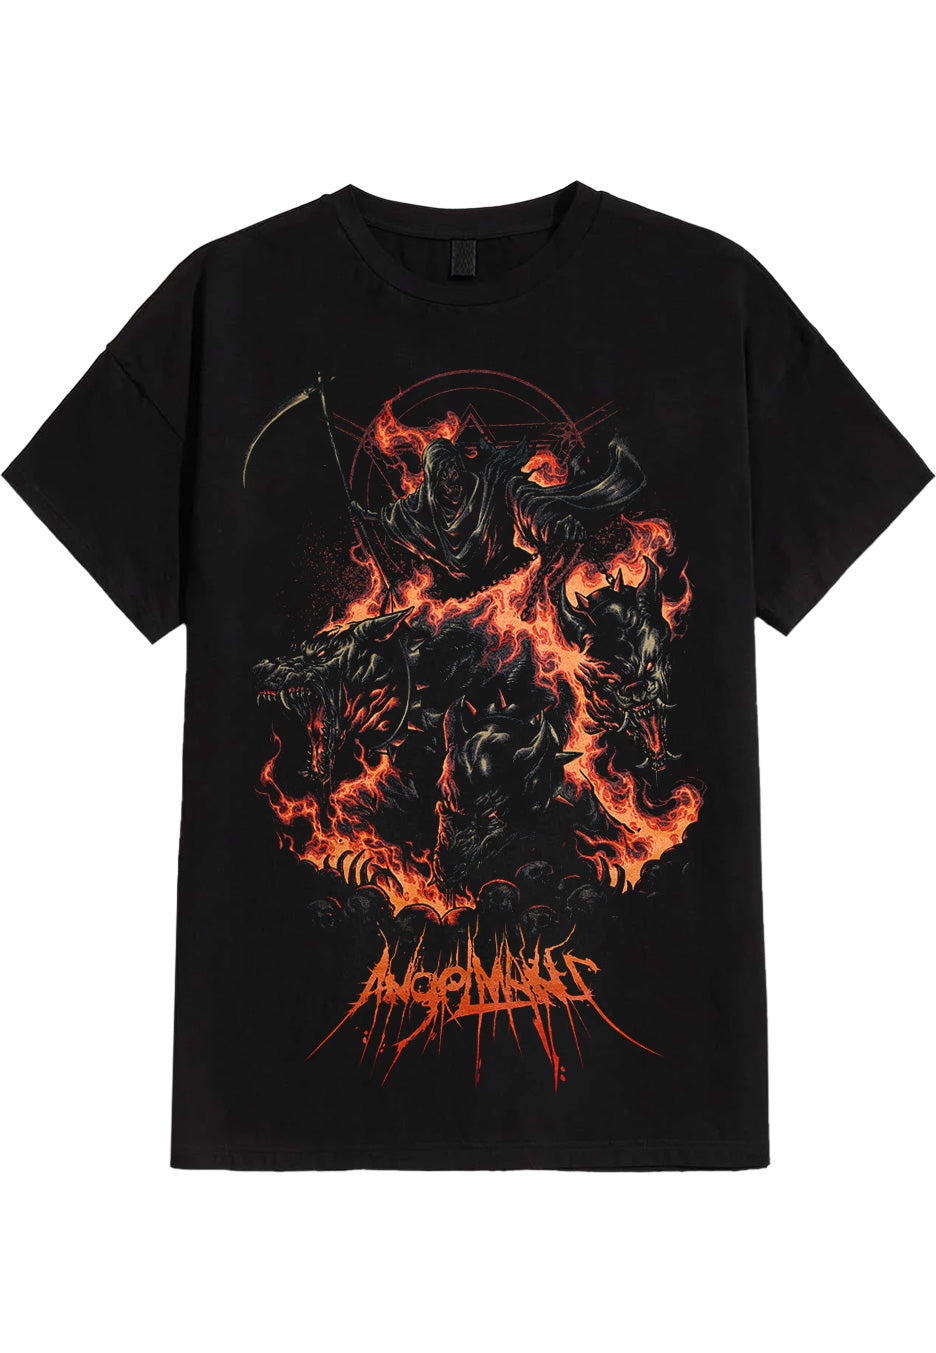 AngelMaker - Hellhound - T-Shirt | Neutral-Image